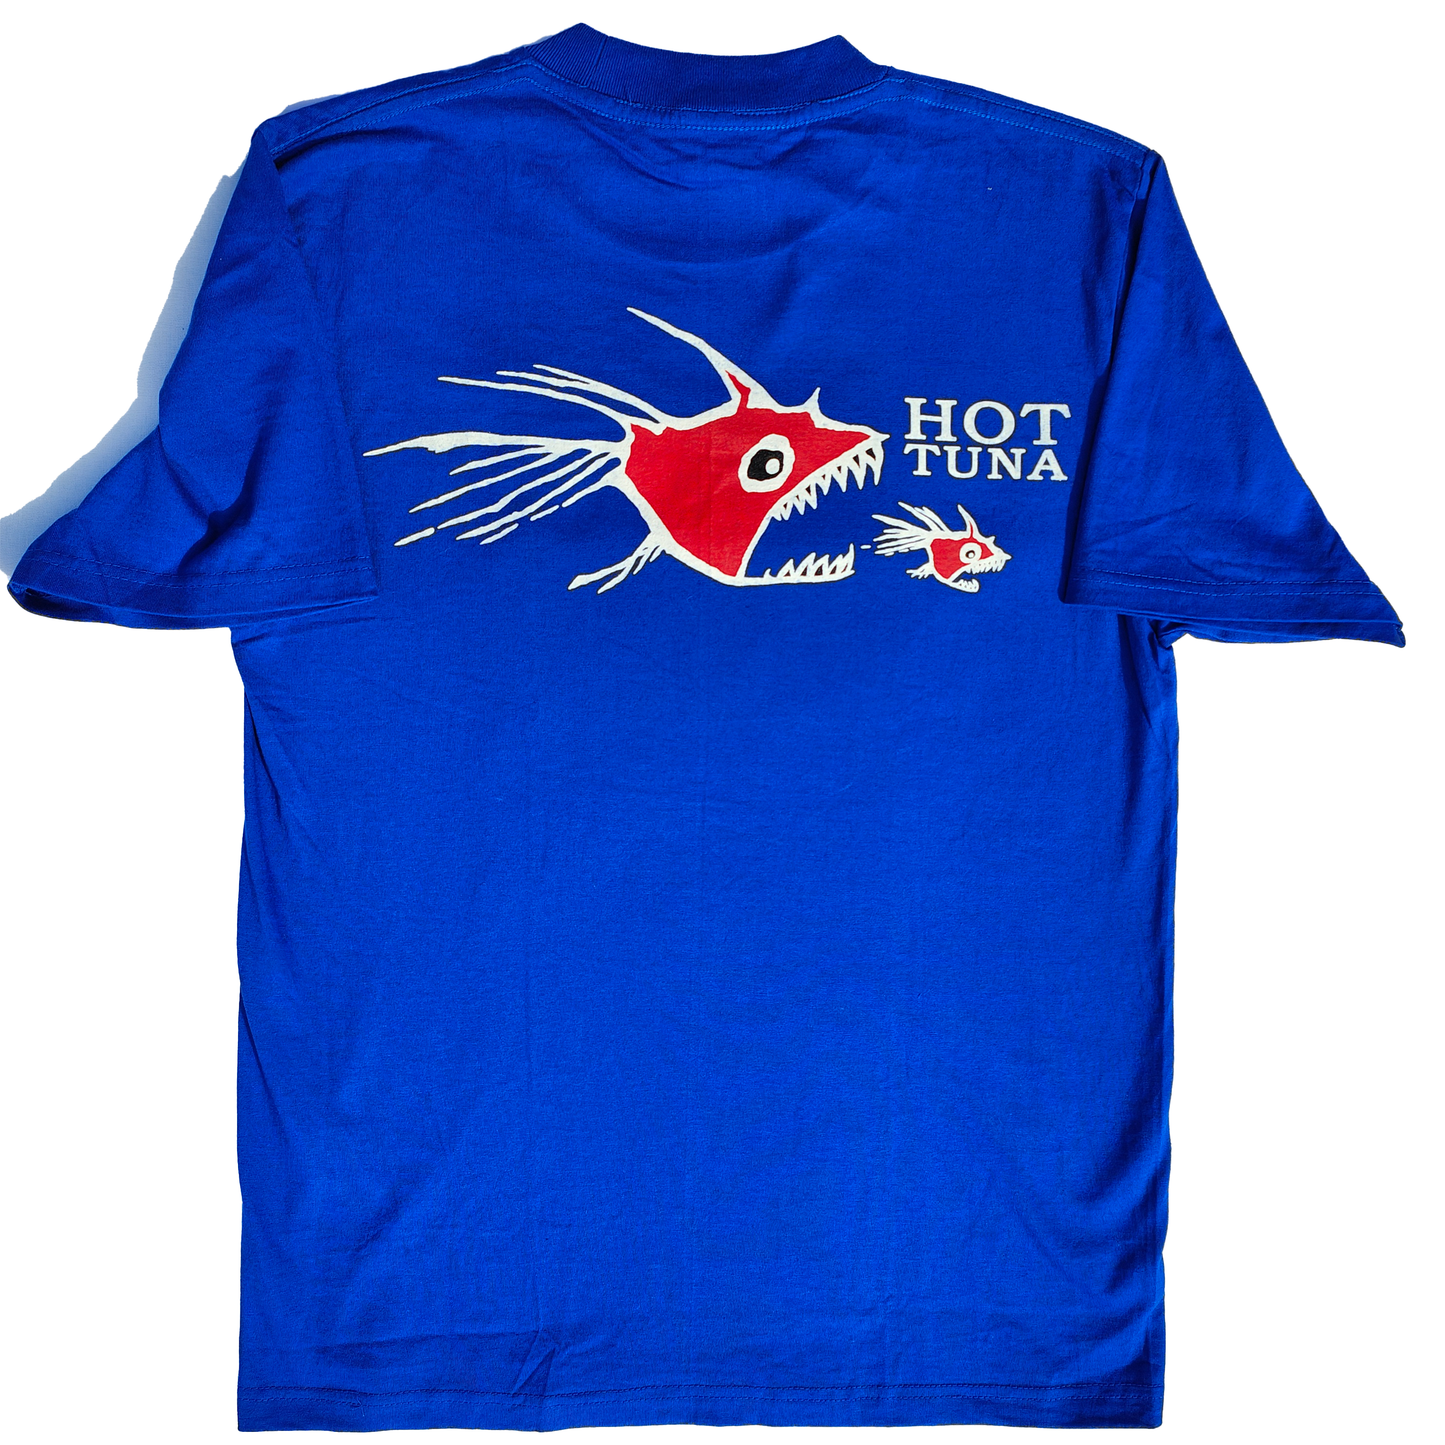 Hot Tuna T Shirt - LARGE